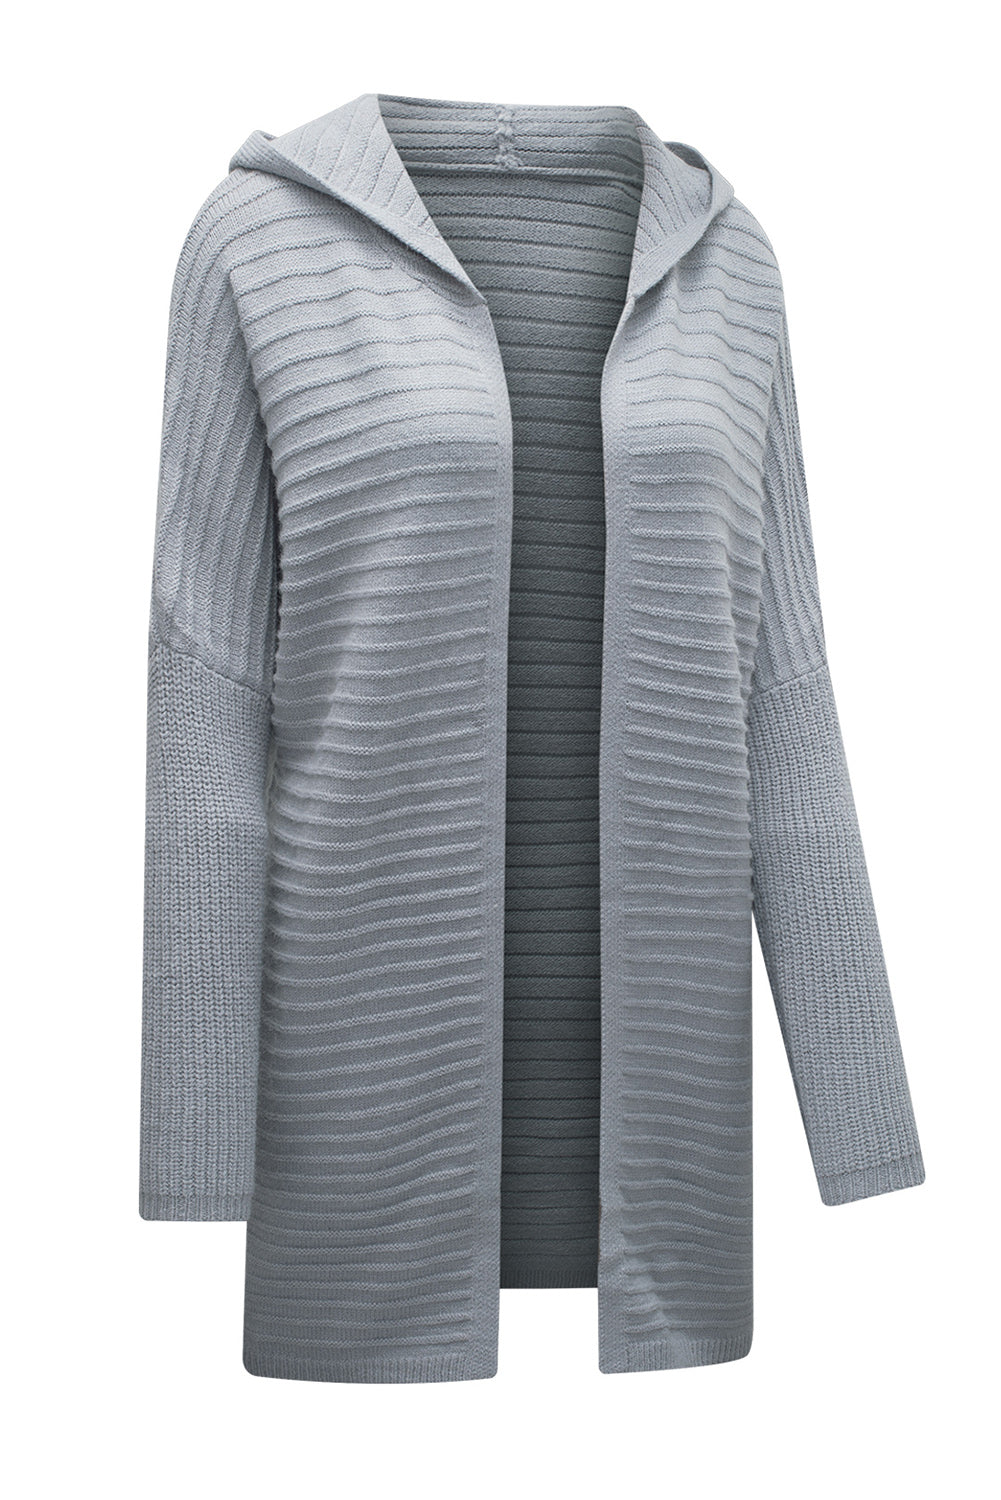 Cardigan à capuche gris en maille côtelée horizontale ouvert sur le devant